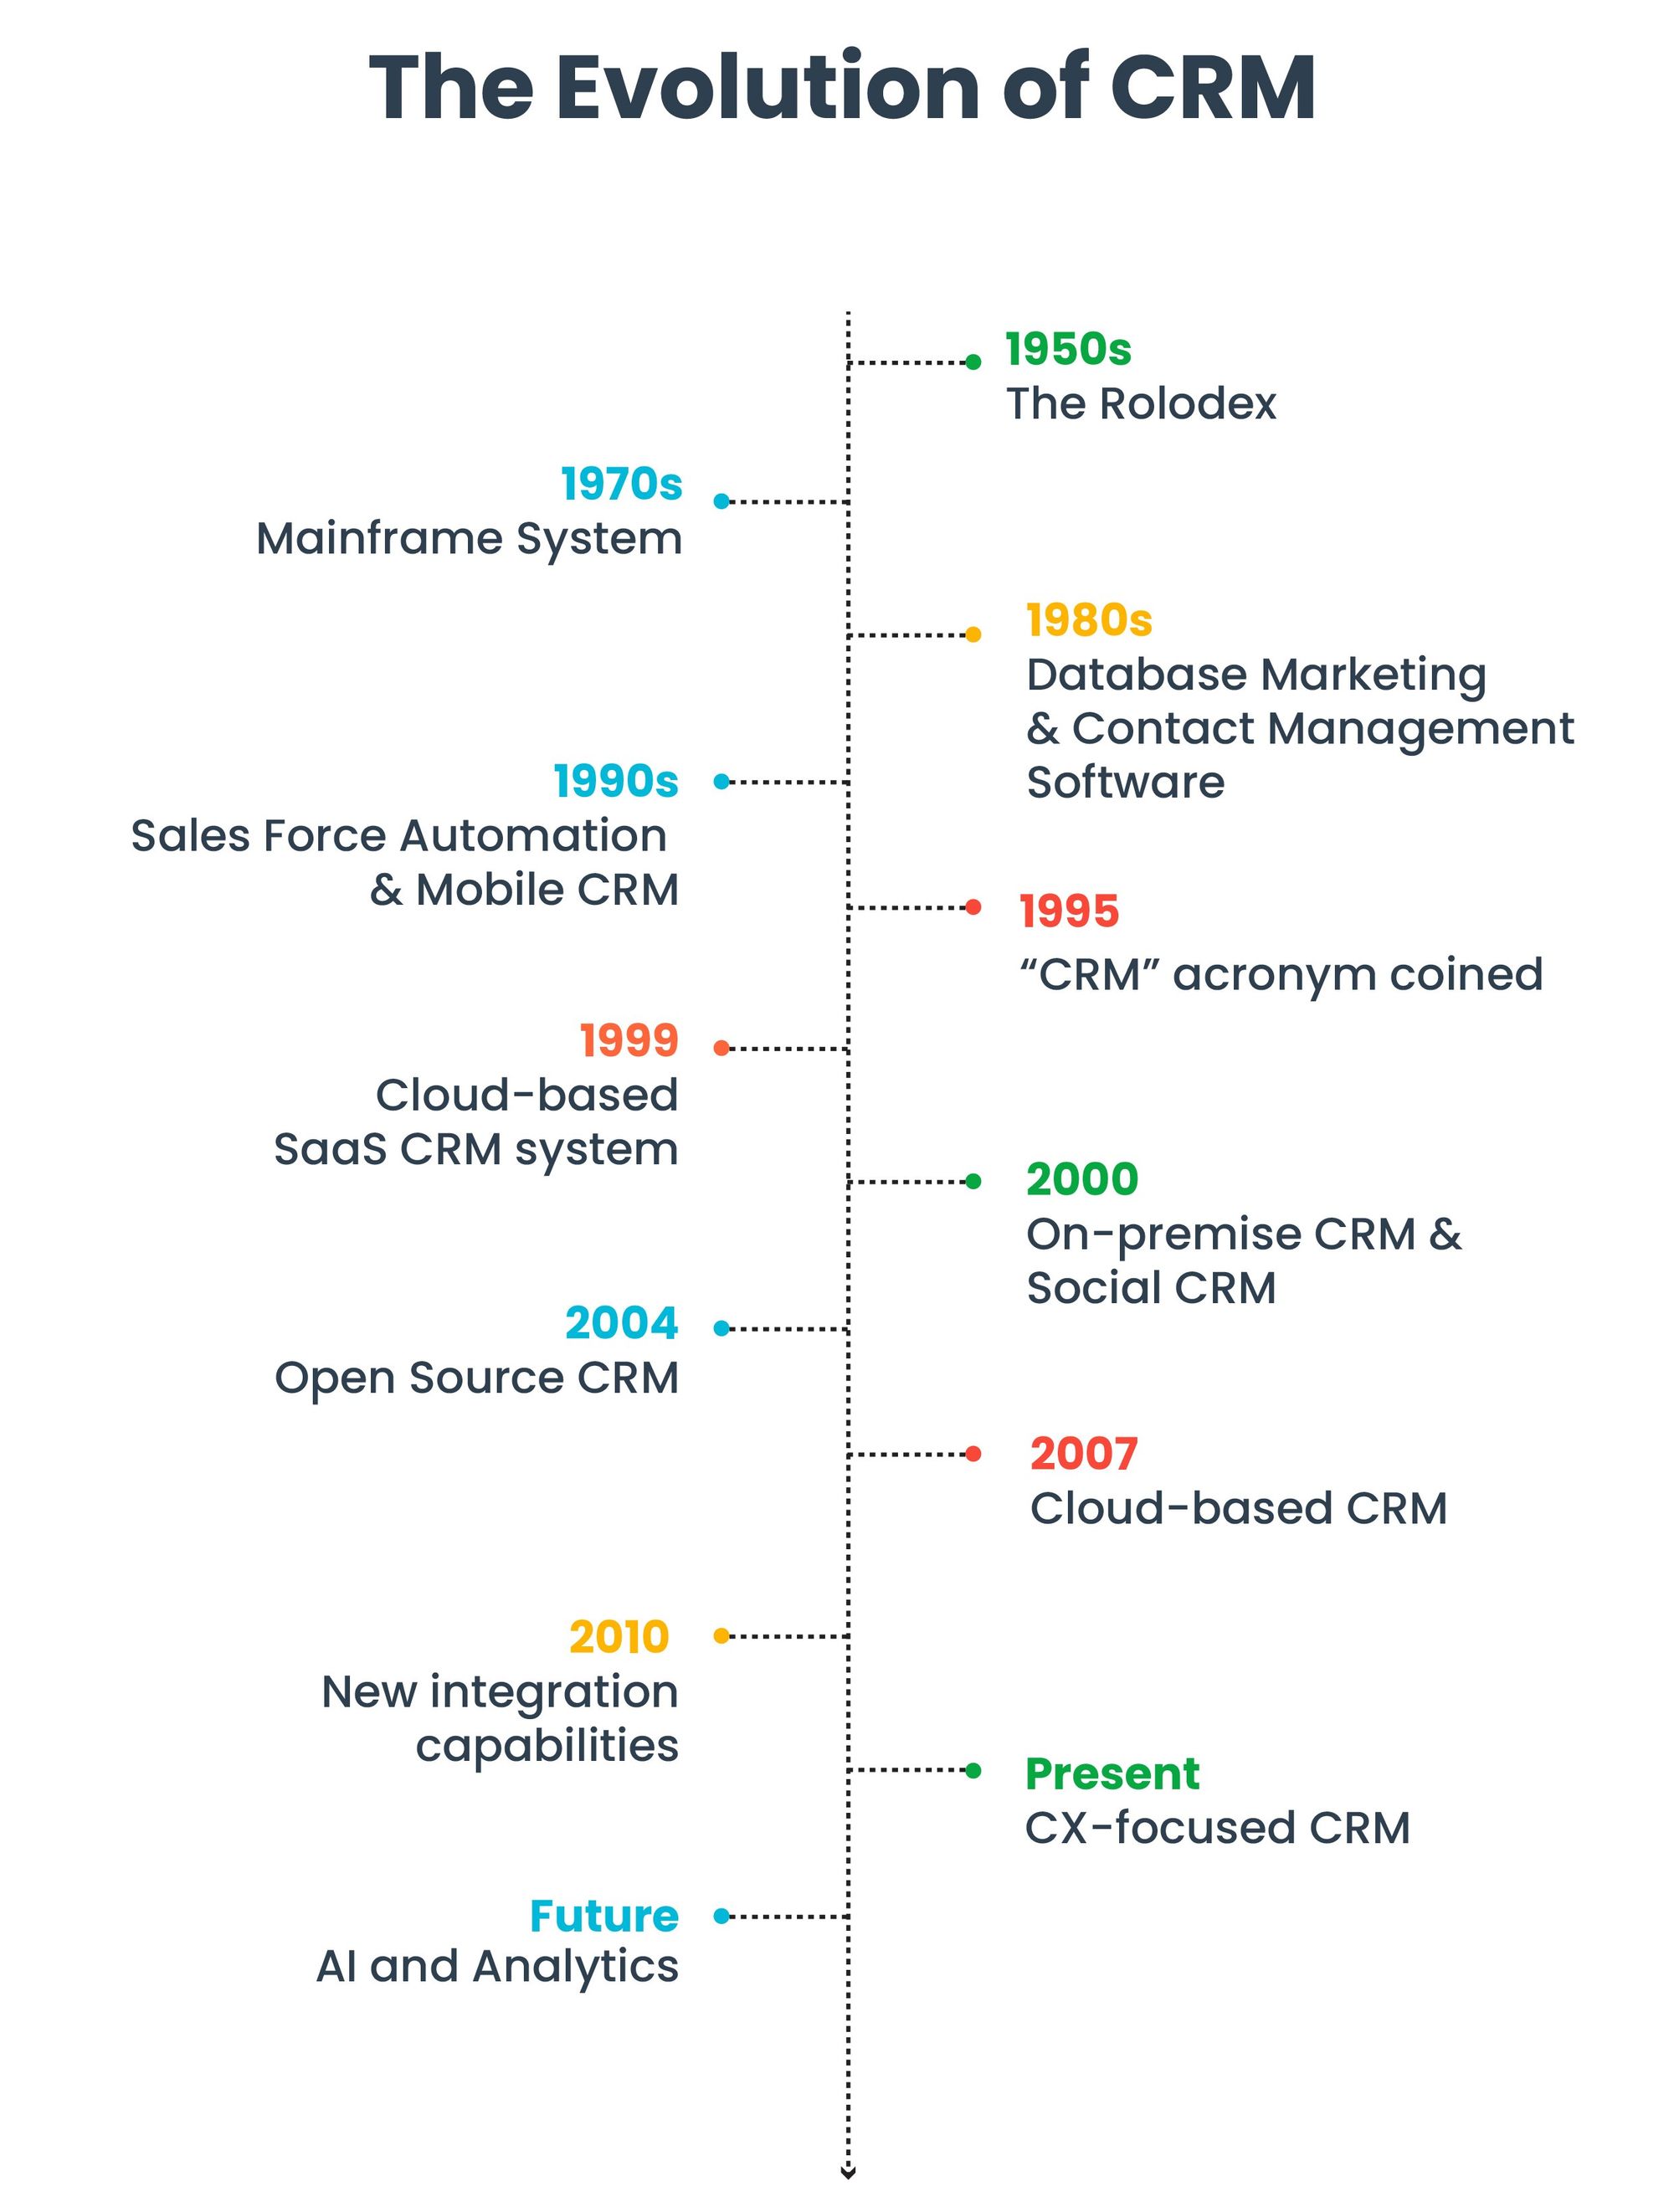 Timeline of CRM system evolution